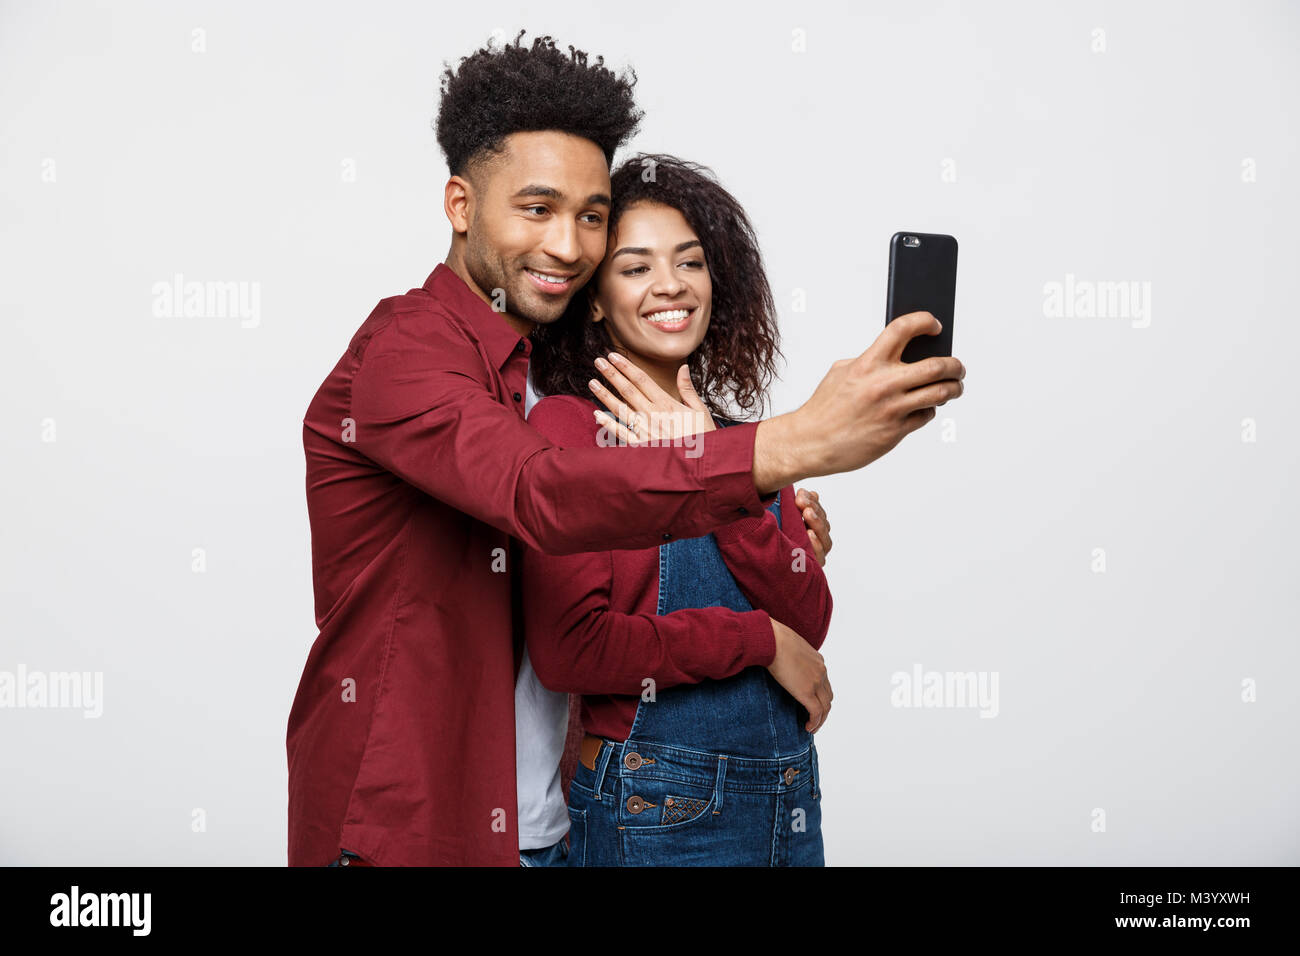 Loving Boyfriend Girlfriend Posing Selfie On Stock Photo 279865640 |  Shutterstock